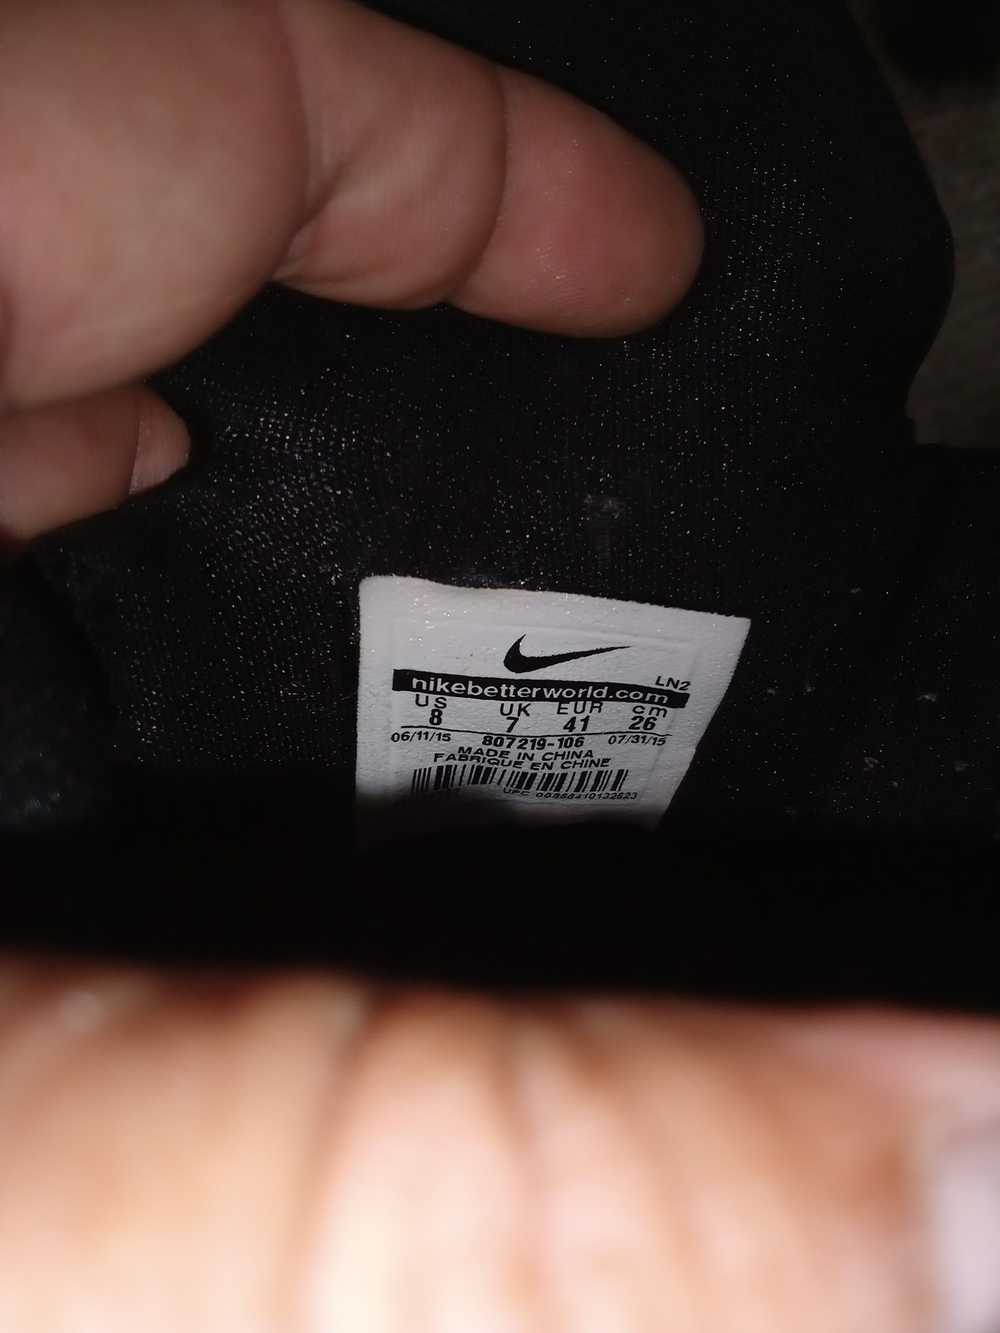 Nike Nike LeBron Friday the 13th - image 4